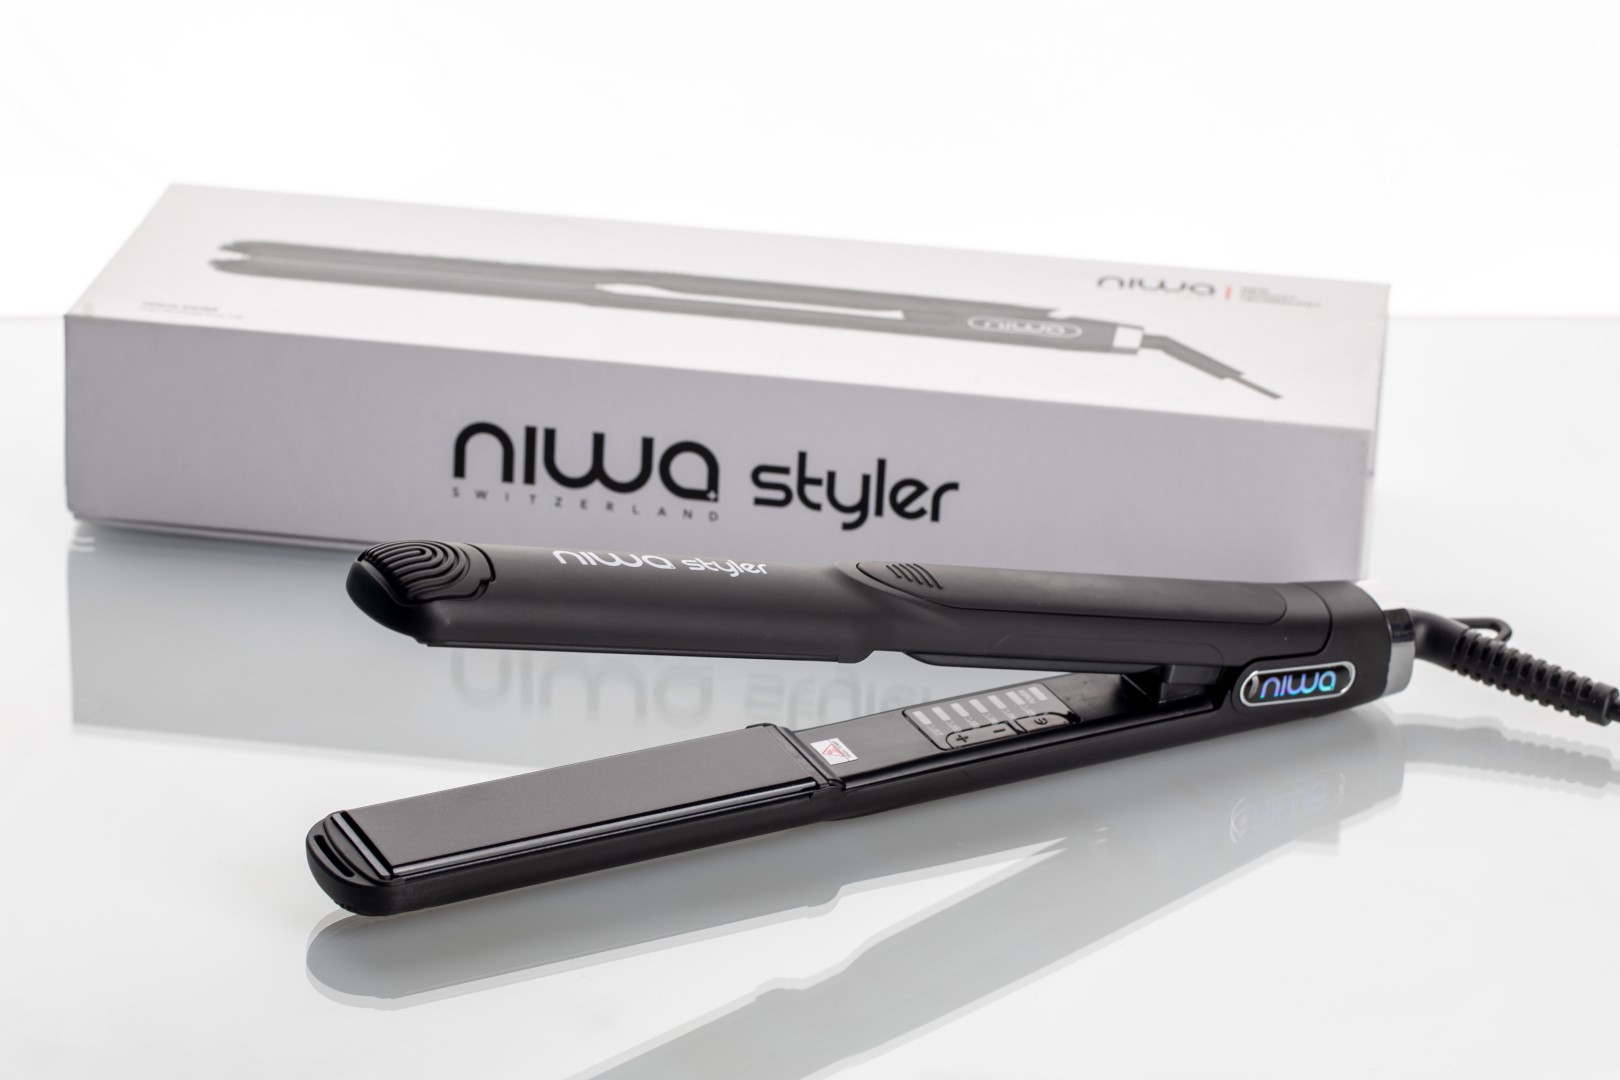 Auf keune.ch ist jetzt der NIWA Styler Black erhältlich, ein professionelles Stylingtool mit schweizer Qualität. Dank modernster Nano-Keramik-Technologie erzielen Sie glattes und frizzfreies Haar.